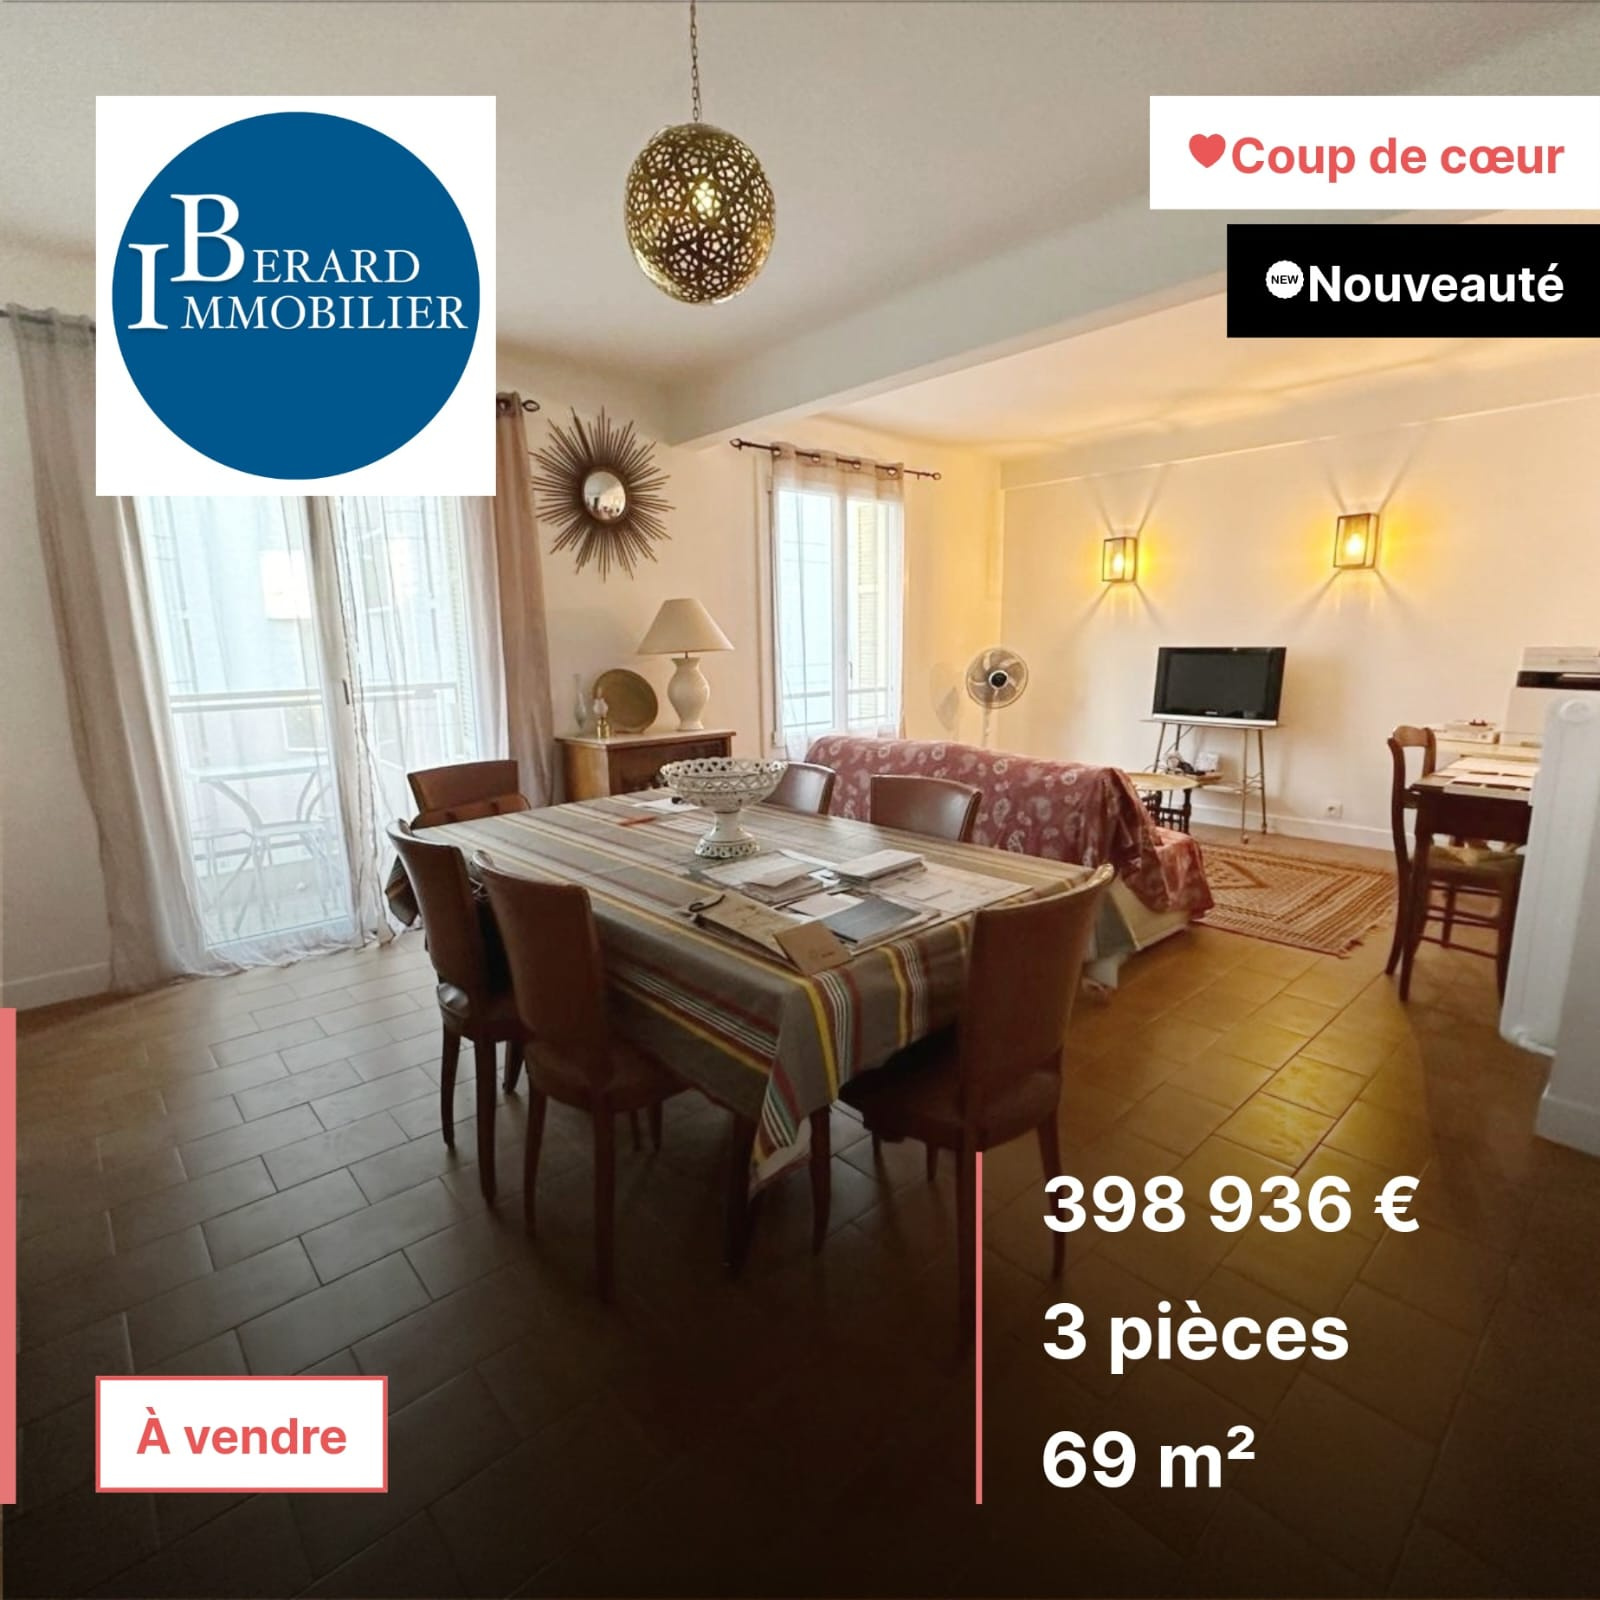 Vente Appartement 69m² 3 Pièces à Nice (06000) - Réseau Expertimo